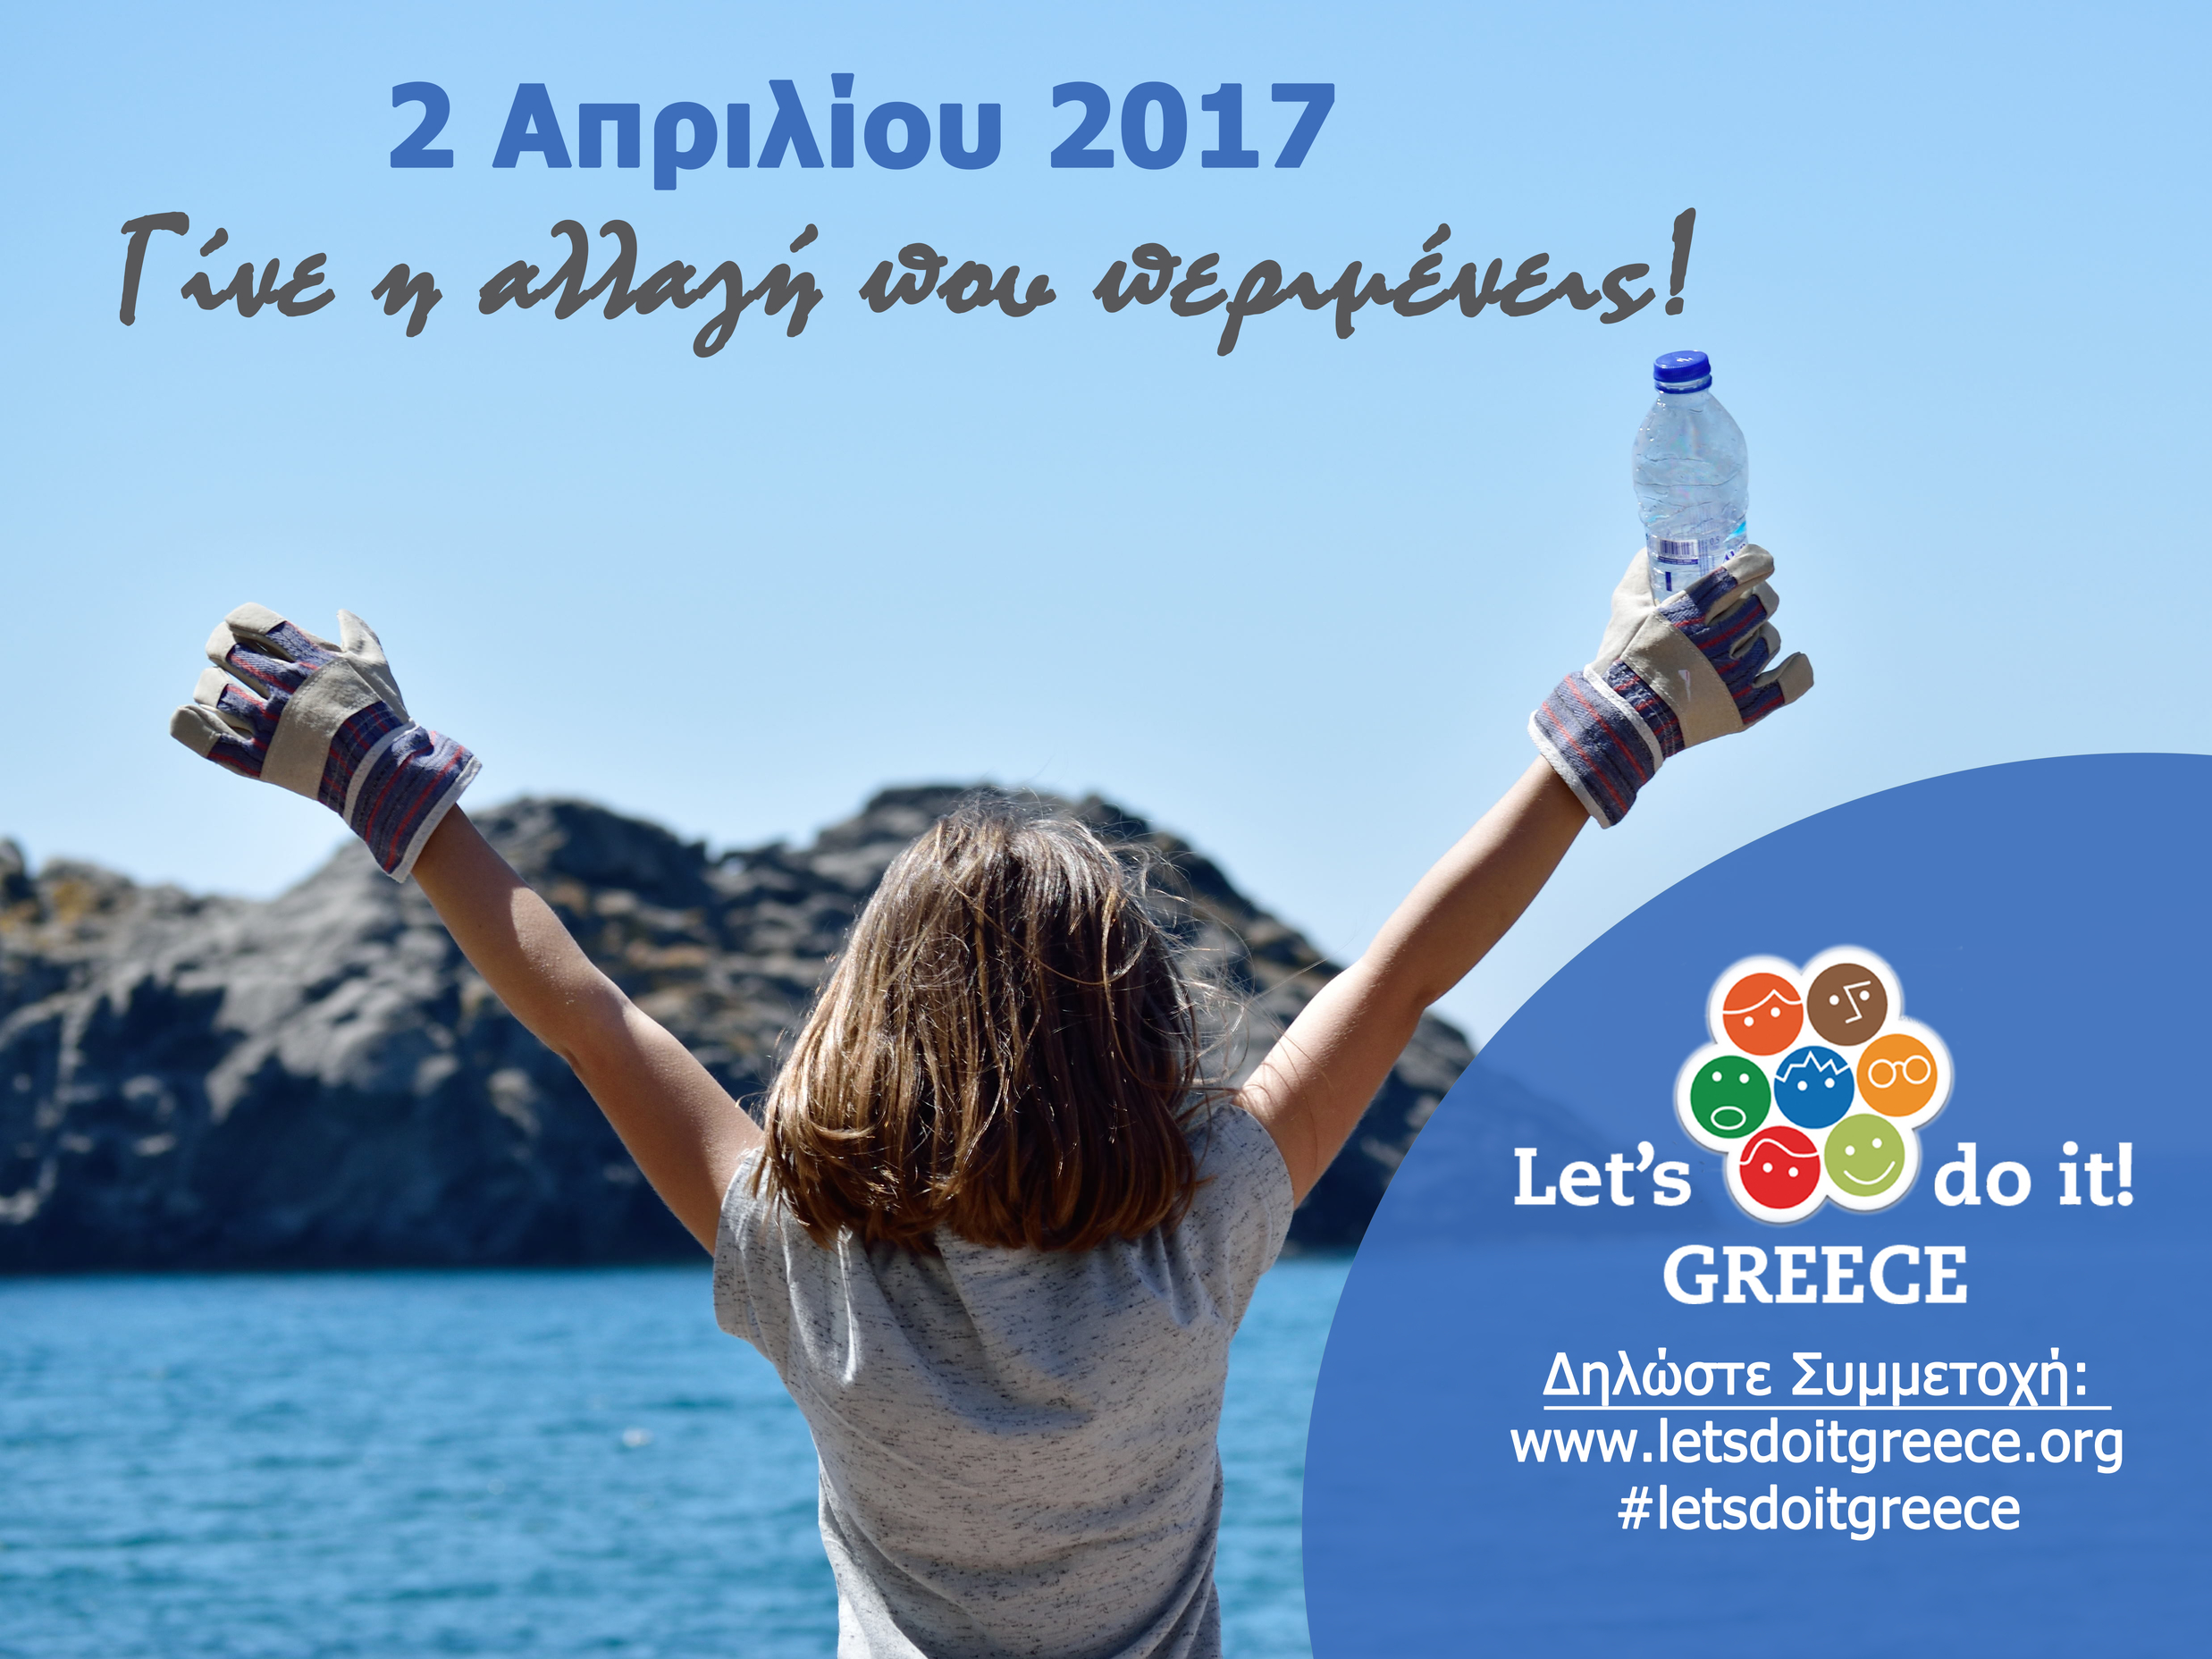 Συνάντηση εθελοντικών ομάδων στην Περιφέρεια για τη διοργάνωση του Let's do it Greece 2017